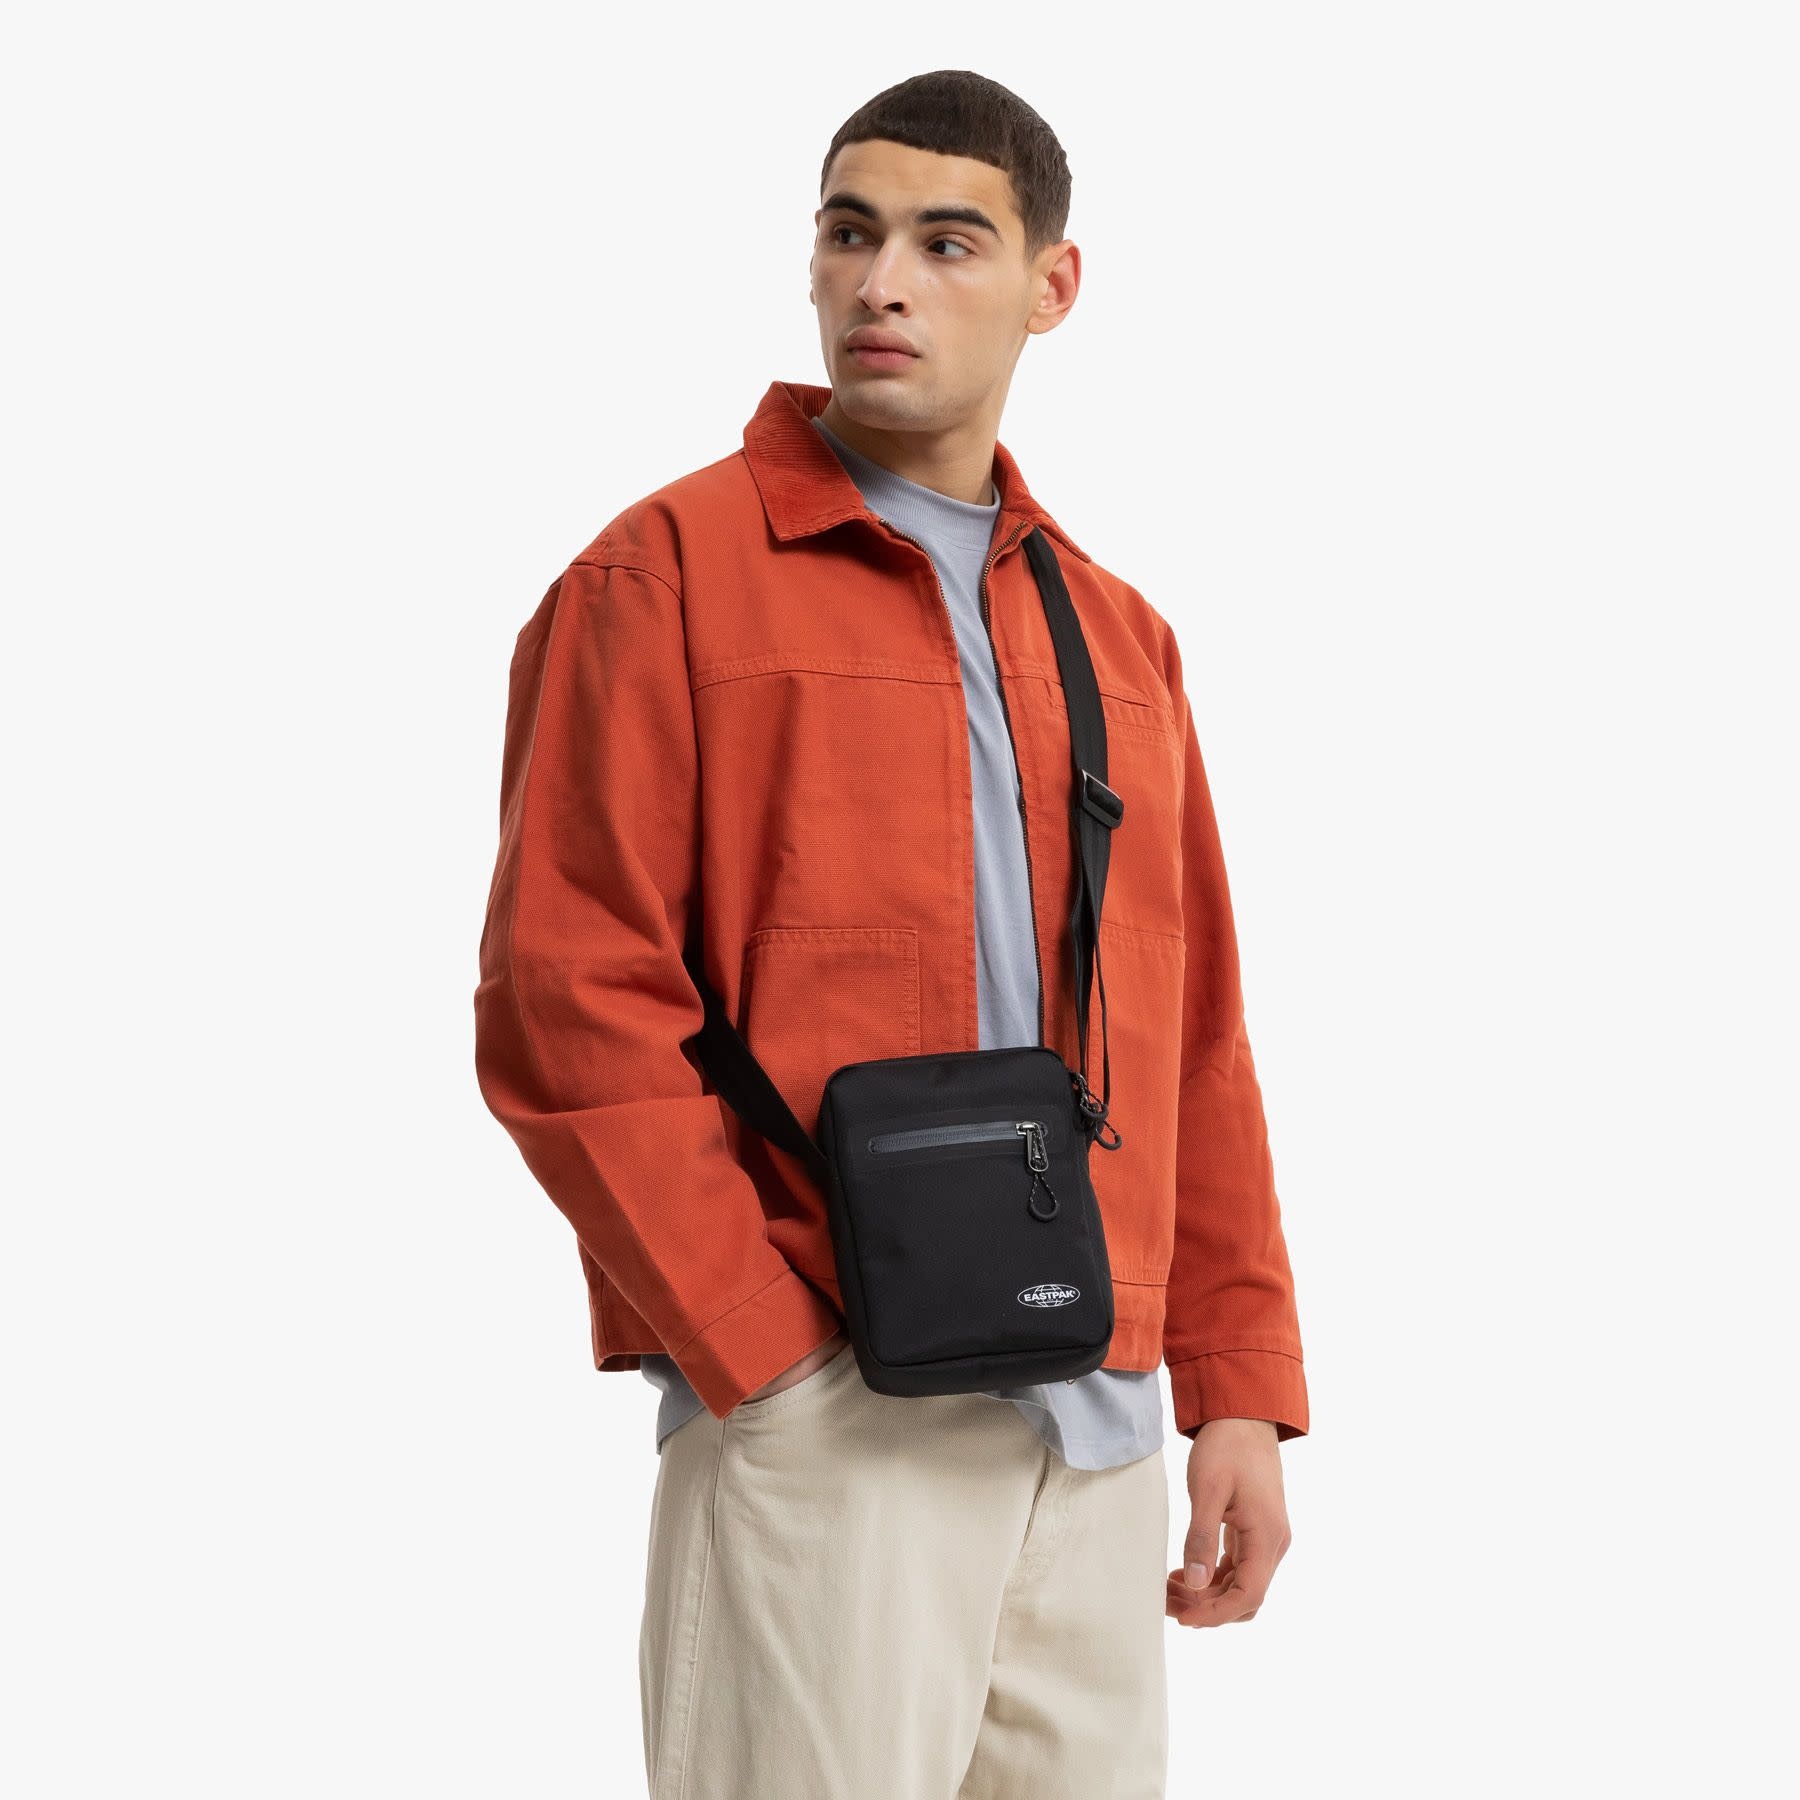 Eastpak The One Shoulder Bag- Storm Black - Just Bags Luggage Center